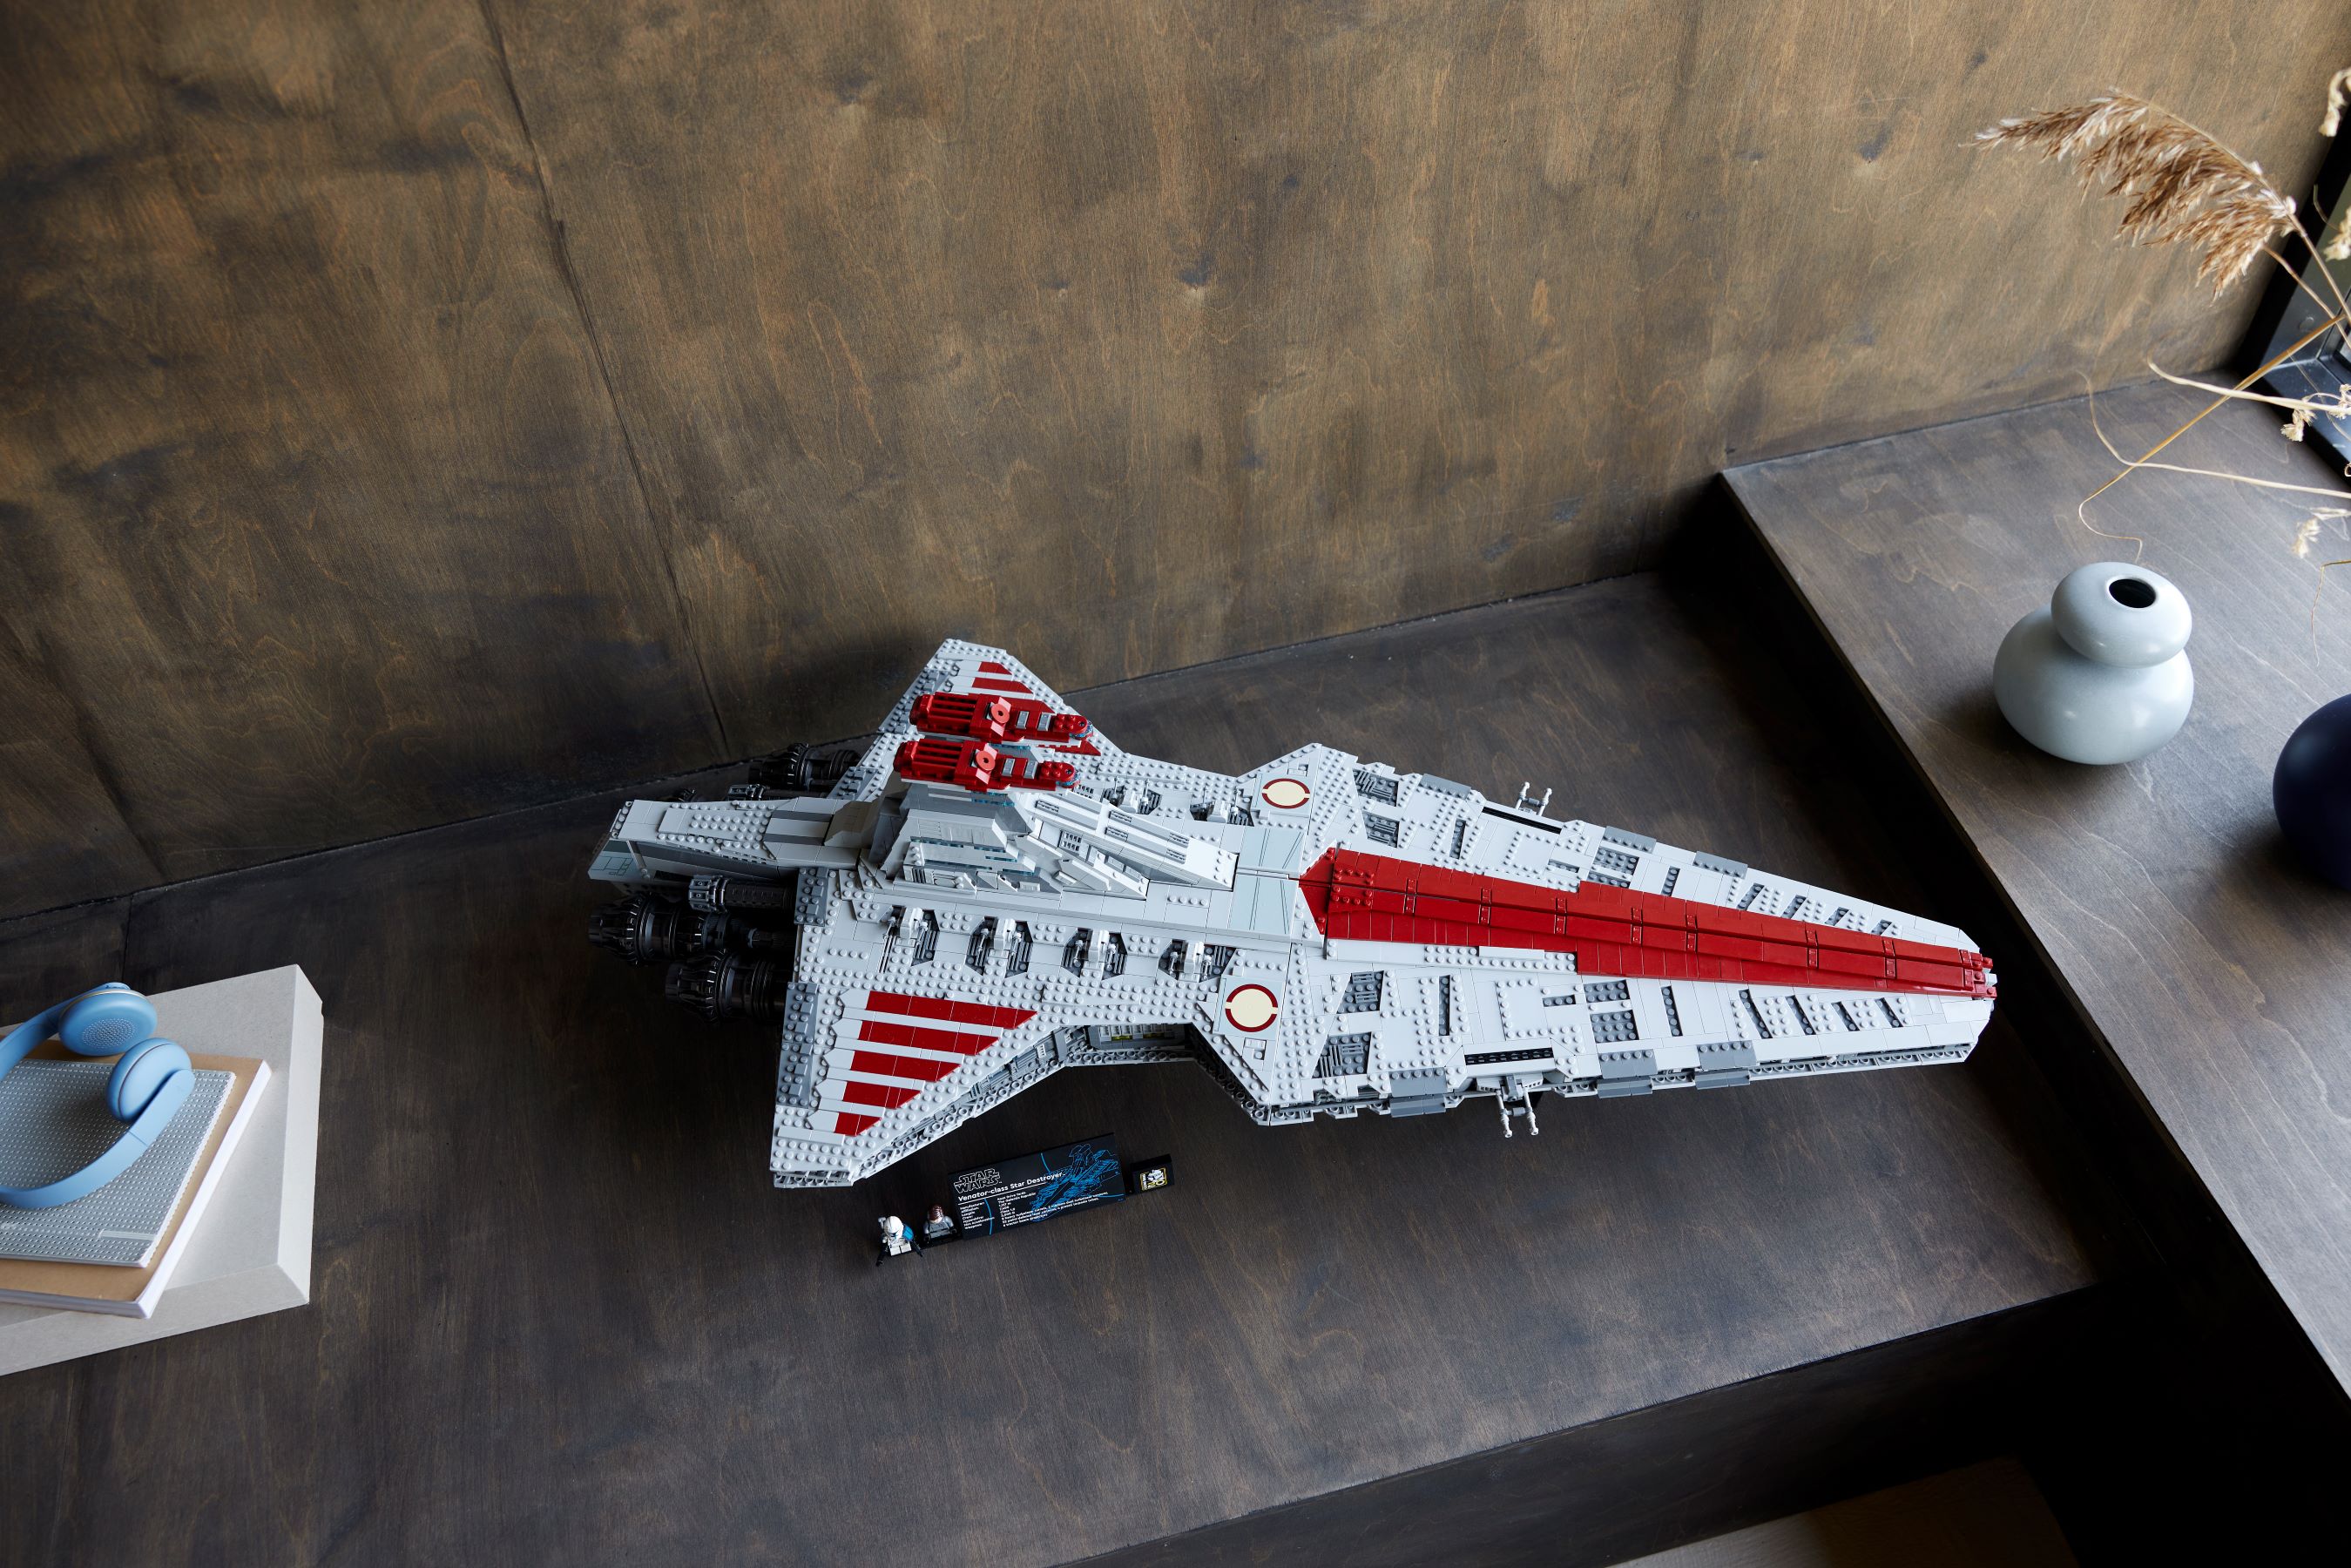 LEGO Star Wars - UCS Venator Class Star Destroyer - Largest Ever Built!, LEGO, Star Wars, Creations, Designs, Sets, Pl…